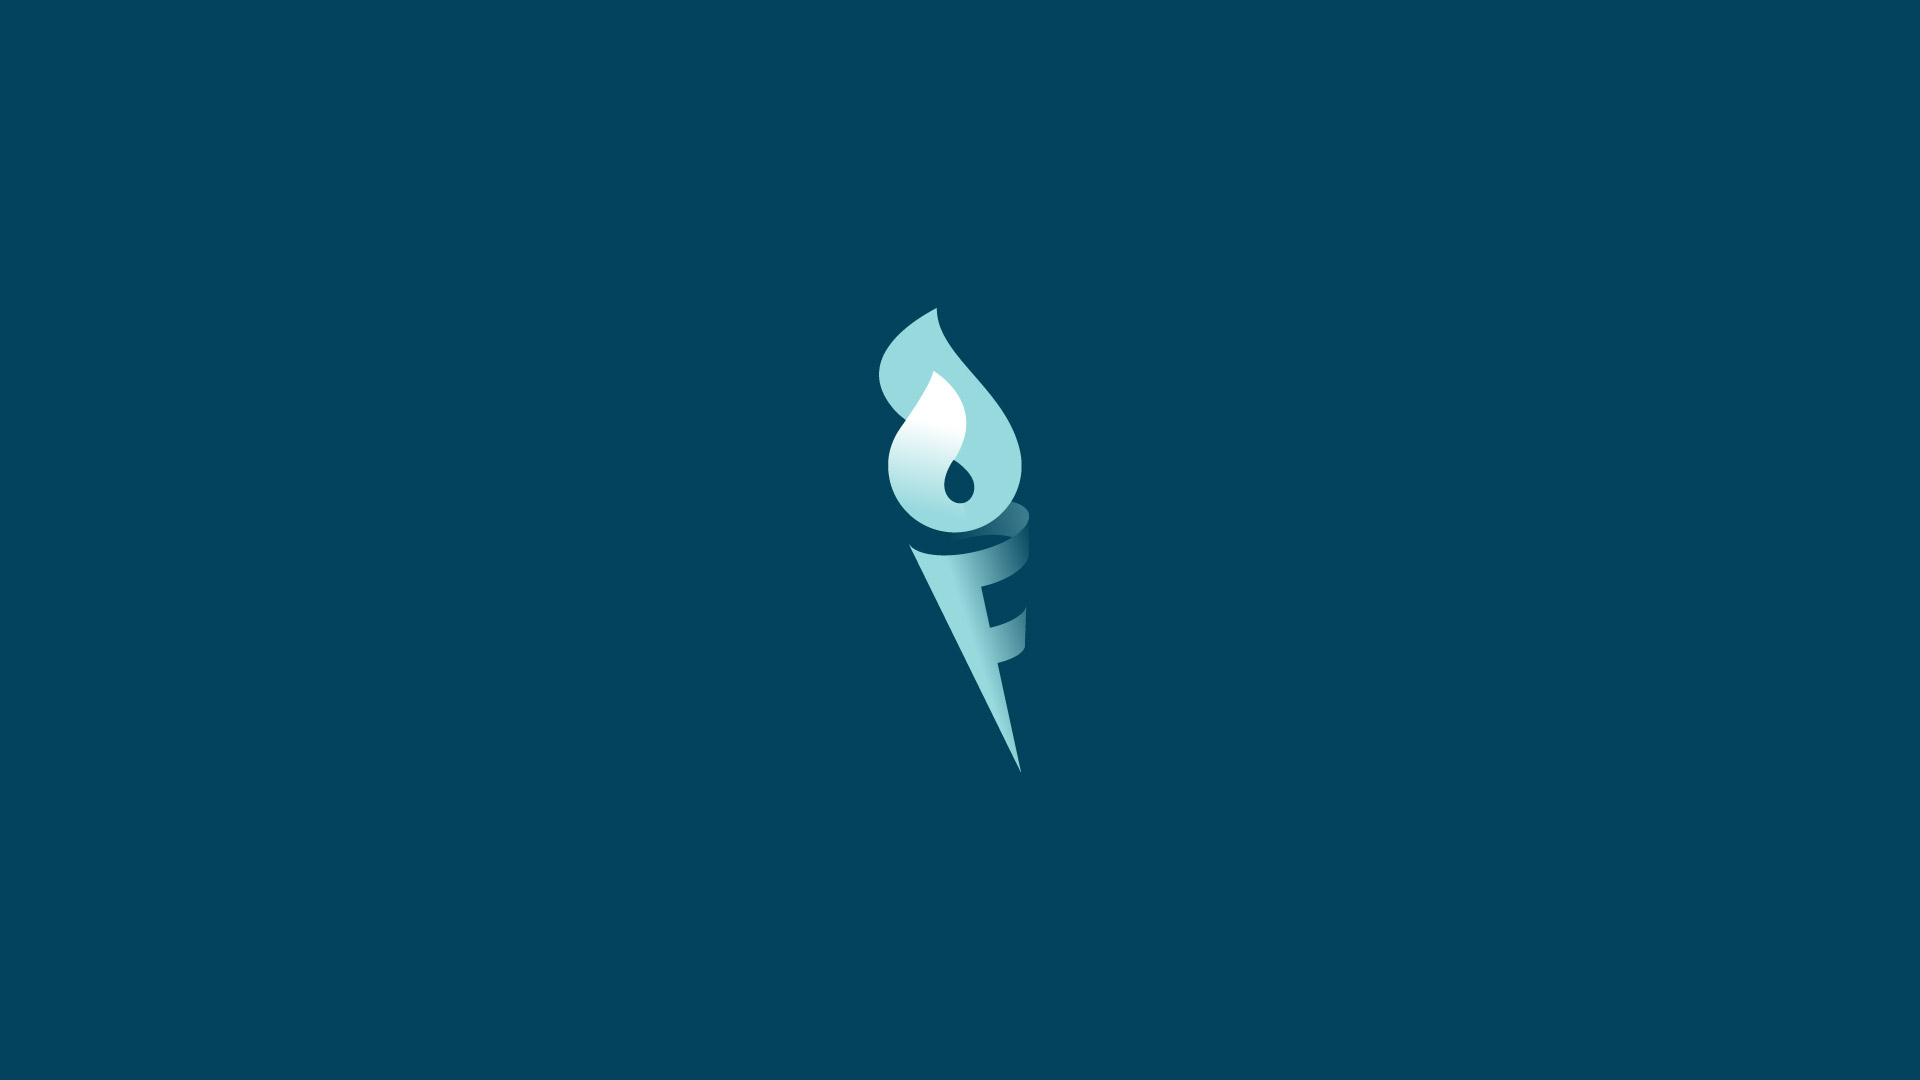 Fire torch logo design by DAINOGO - Purchase logo